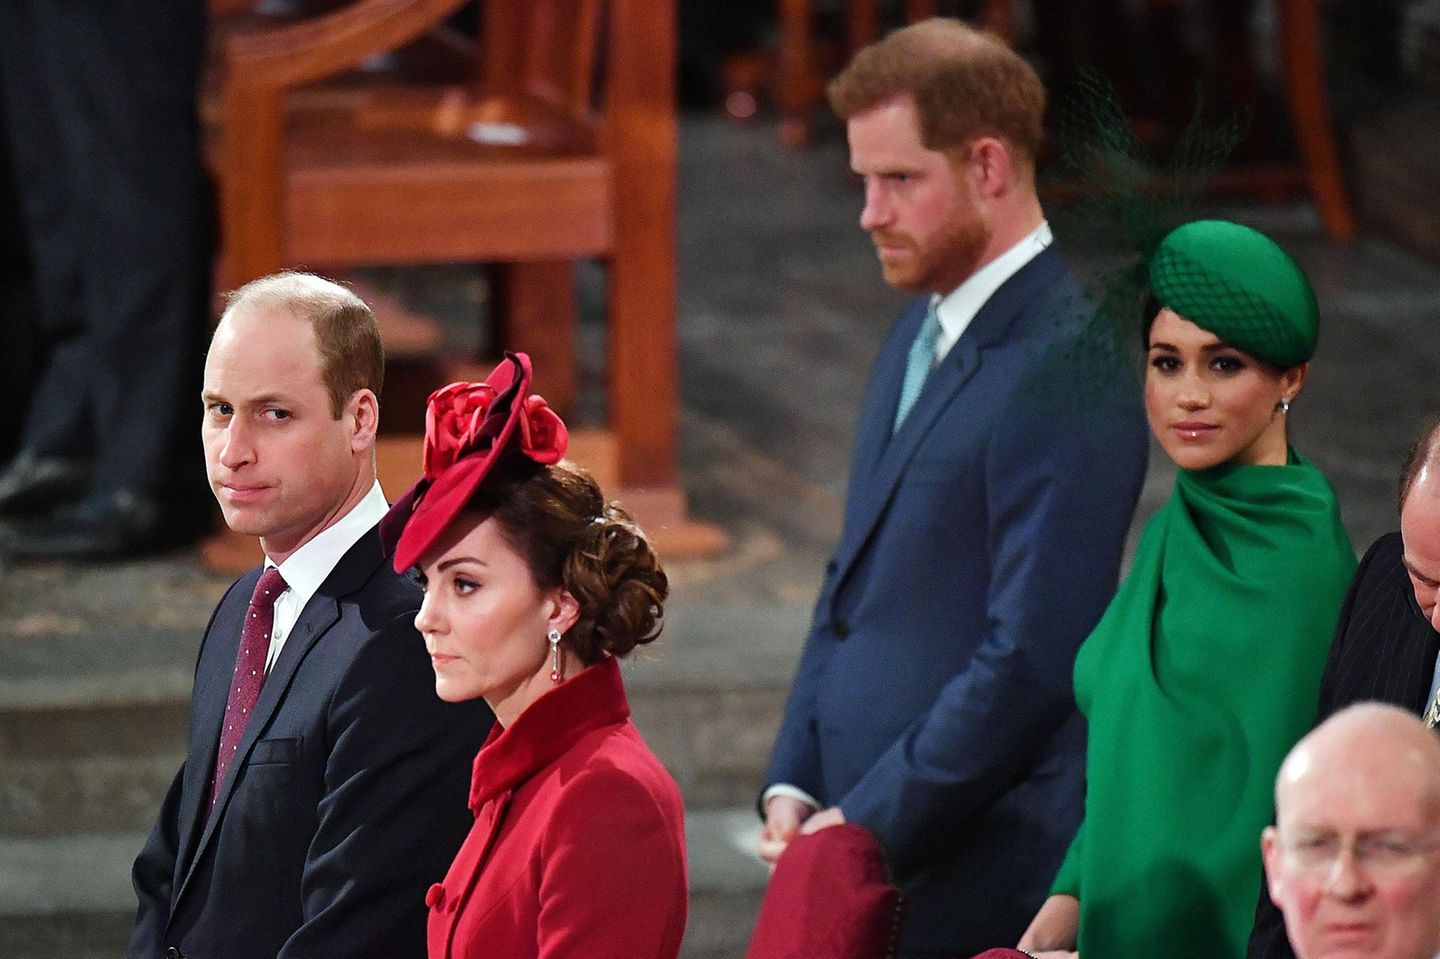 Auf diese Fotos hat die Welt gewartet: Es sind die ersten gemeinsamen Fotos von William, Kate, Harry und Meghan seit der Ankündigung der Sussexes, sich als Senior-Royals zurückzuziehen. 